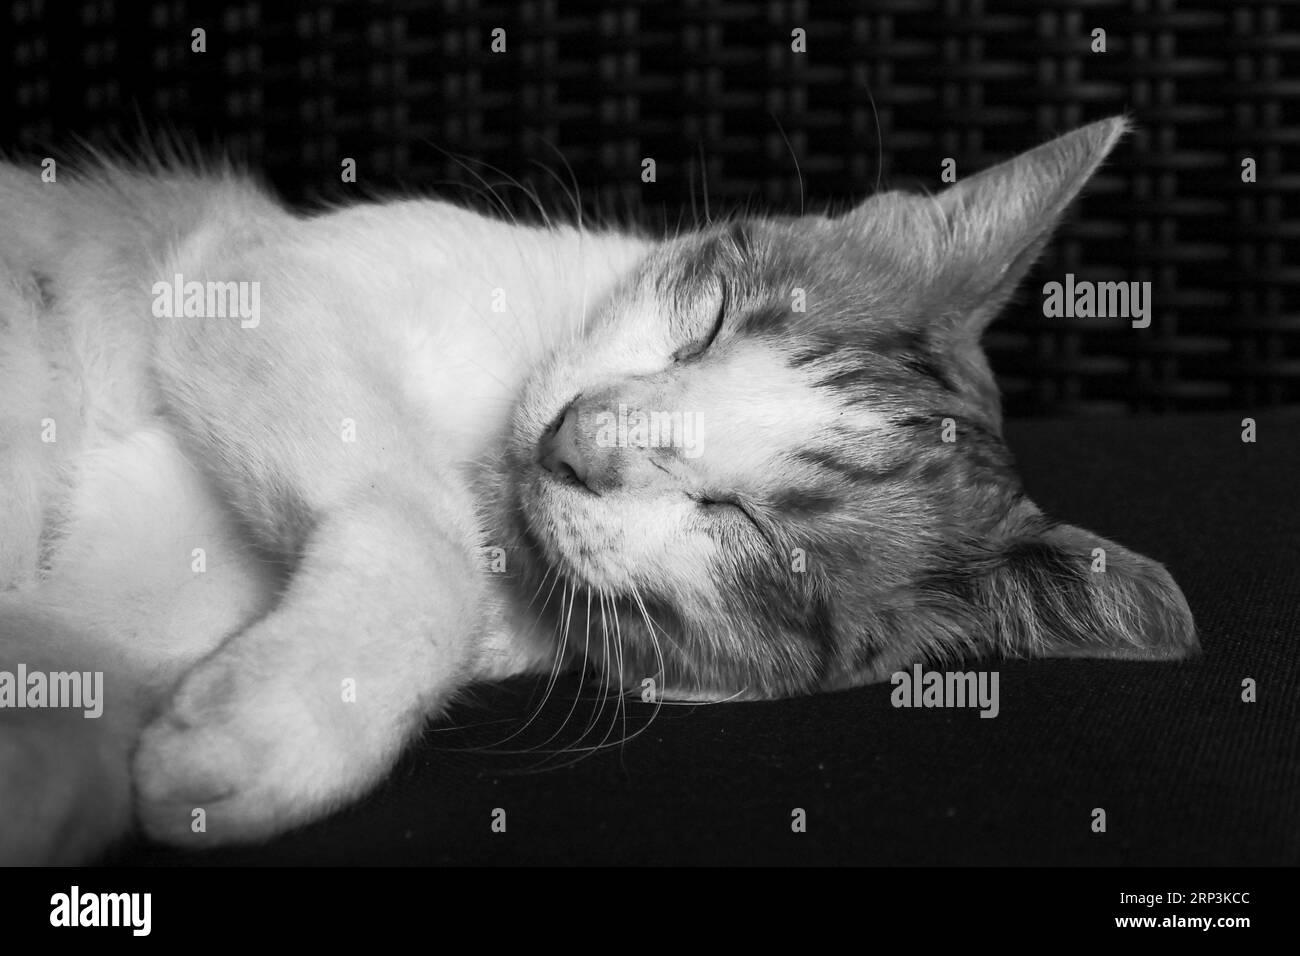 Un primo piano di un gatto che dorme tranquillamente su un divano, con gli occhi chiusi in un sonno profondo Foto Stock